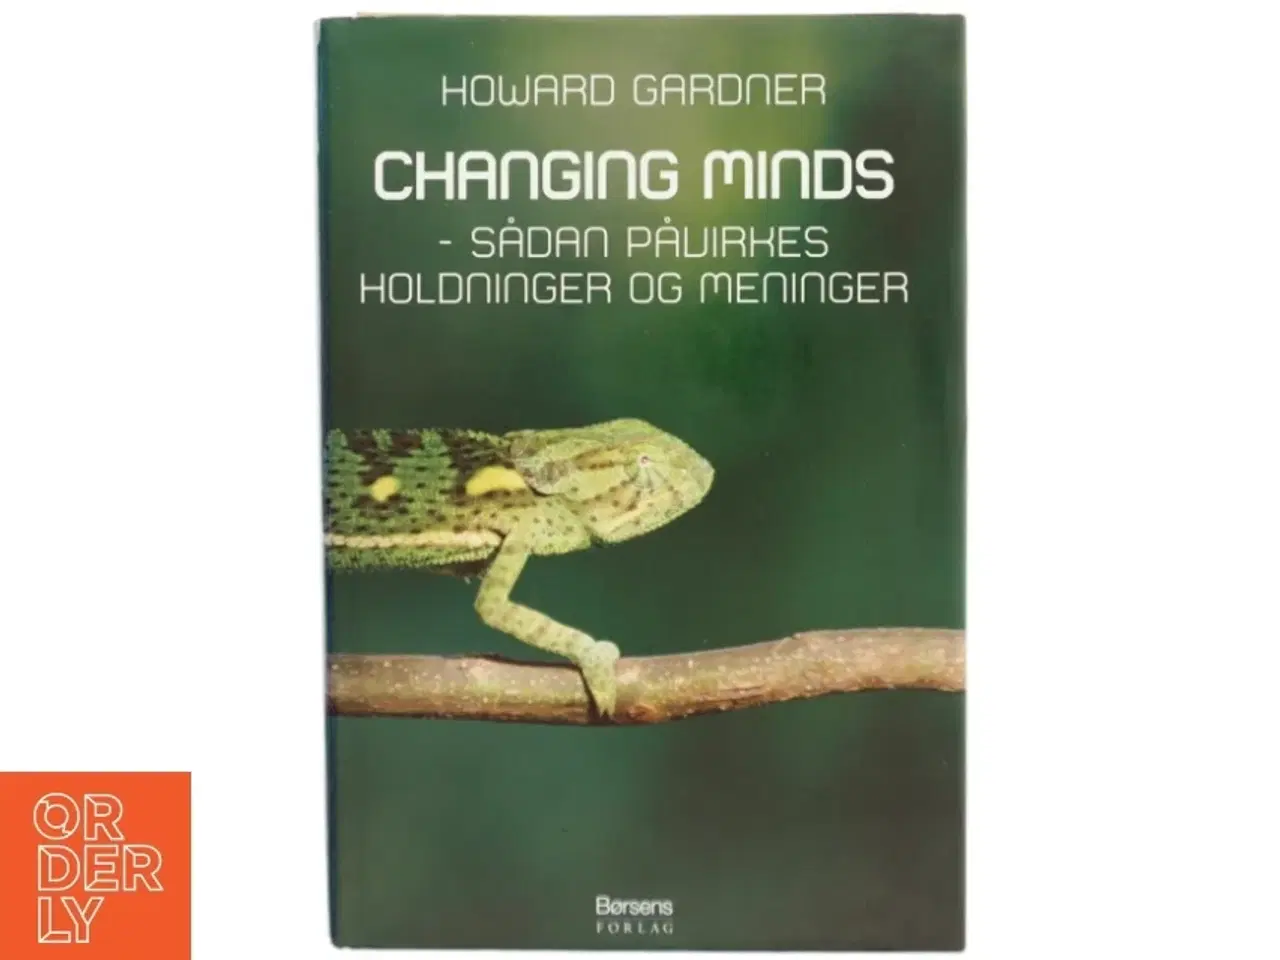 Billede 1 - Changing minds : sådan påvirkes holdninger og meninger (Tekst på dansk) af Howard Gardner (Bog)